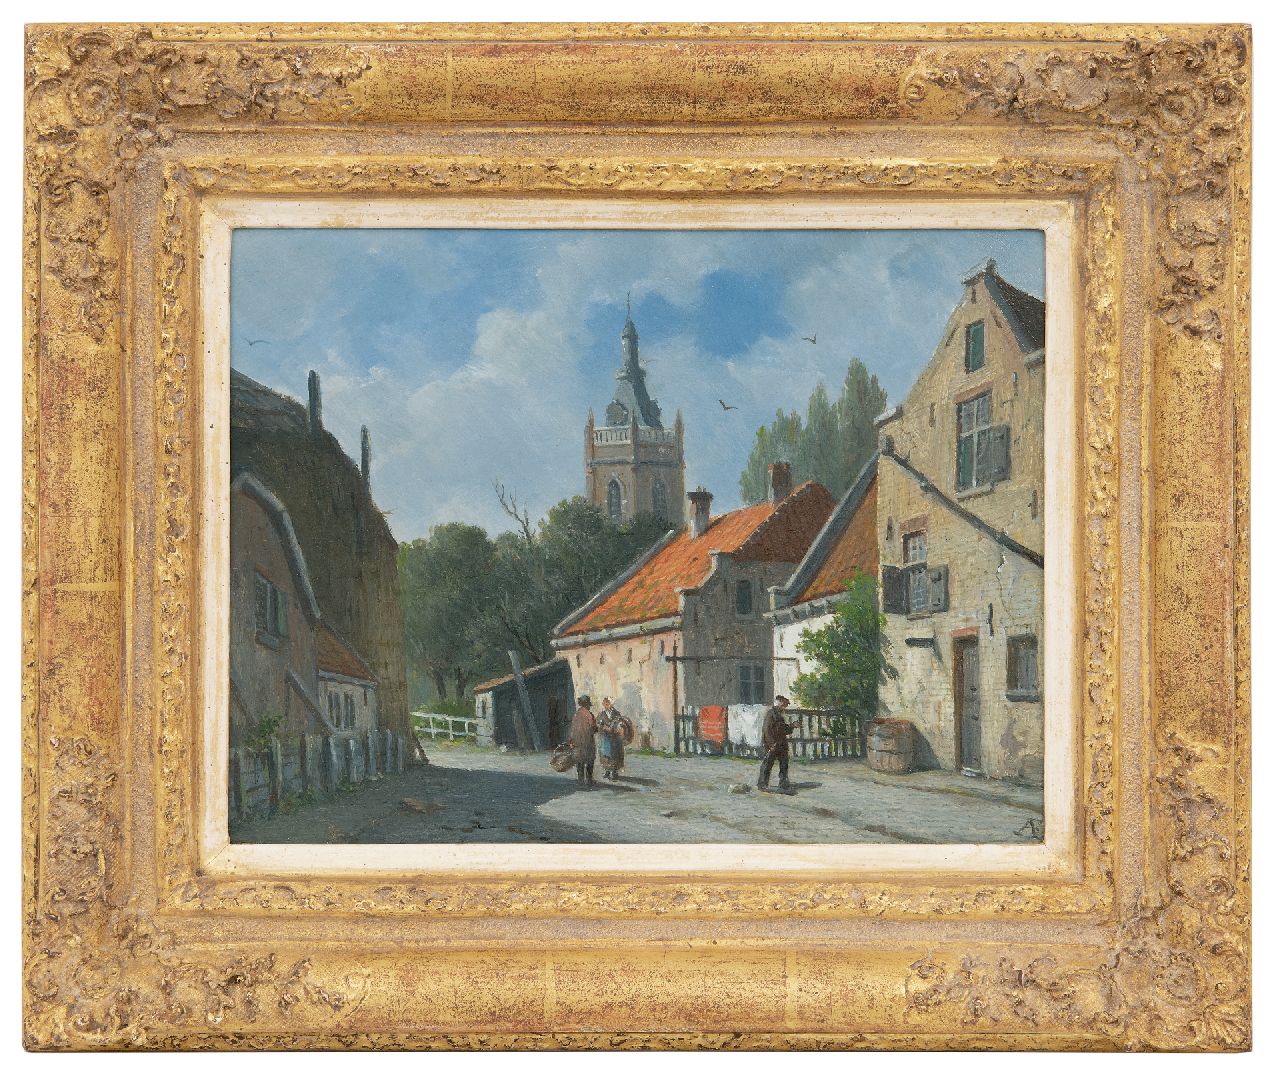 Eversen A.  | Adrianus Eversen | Schilderijen te koop aangeboden | Zonnig stadsgezicht in Overschie, olieverf op paneel 20,7 x 26,8 cm, gesigneerd rechtsonder met monogram